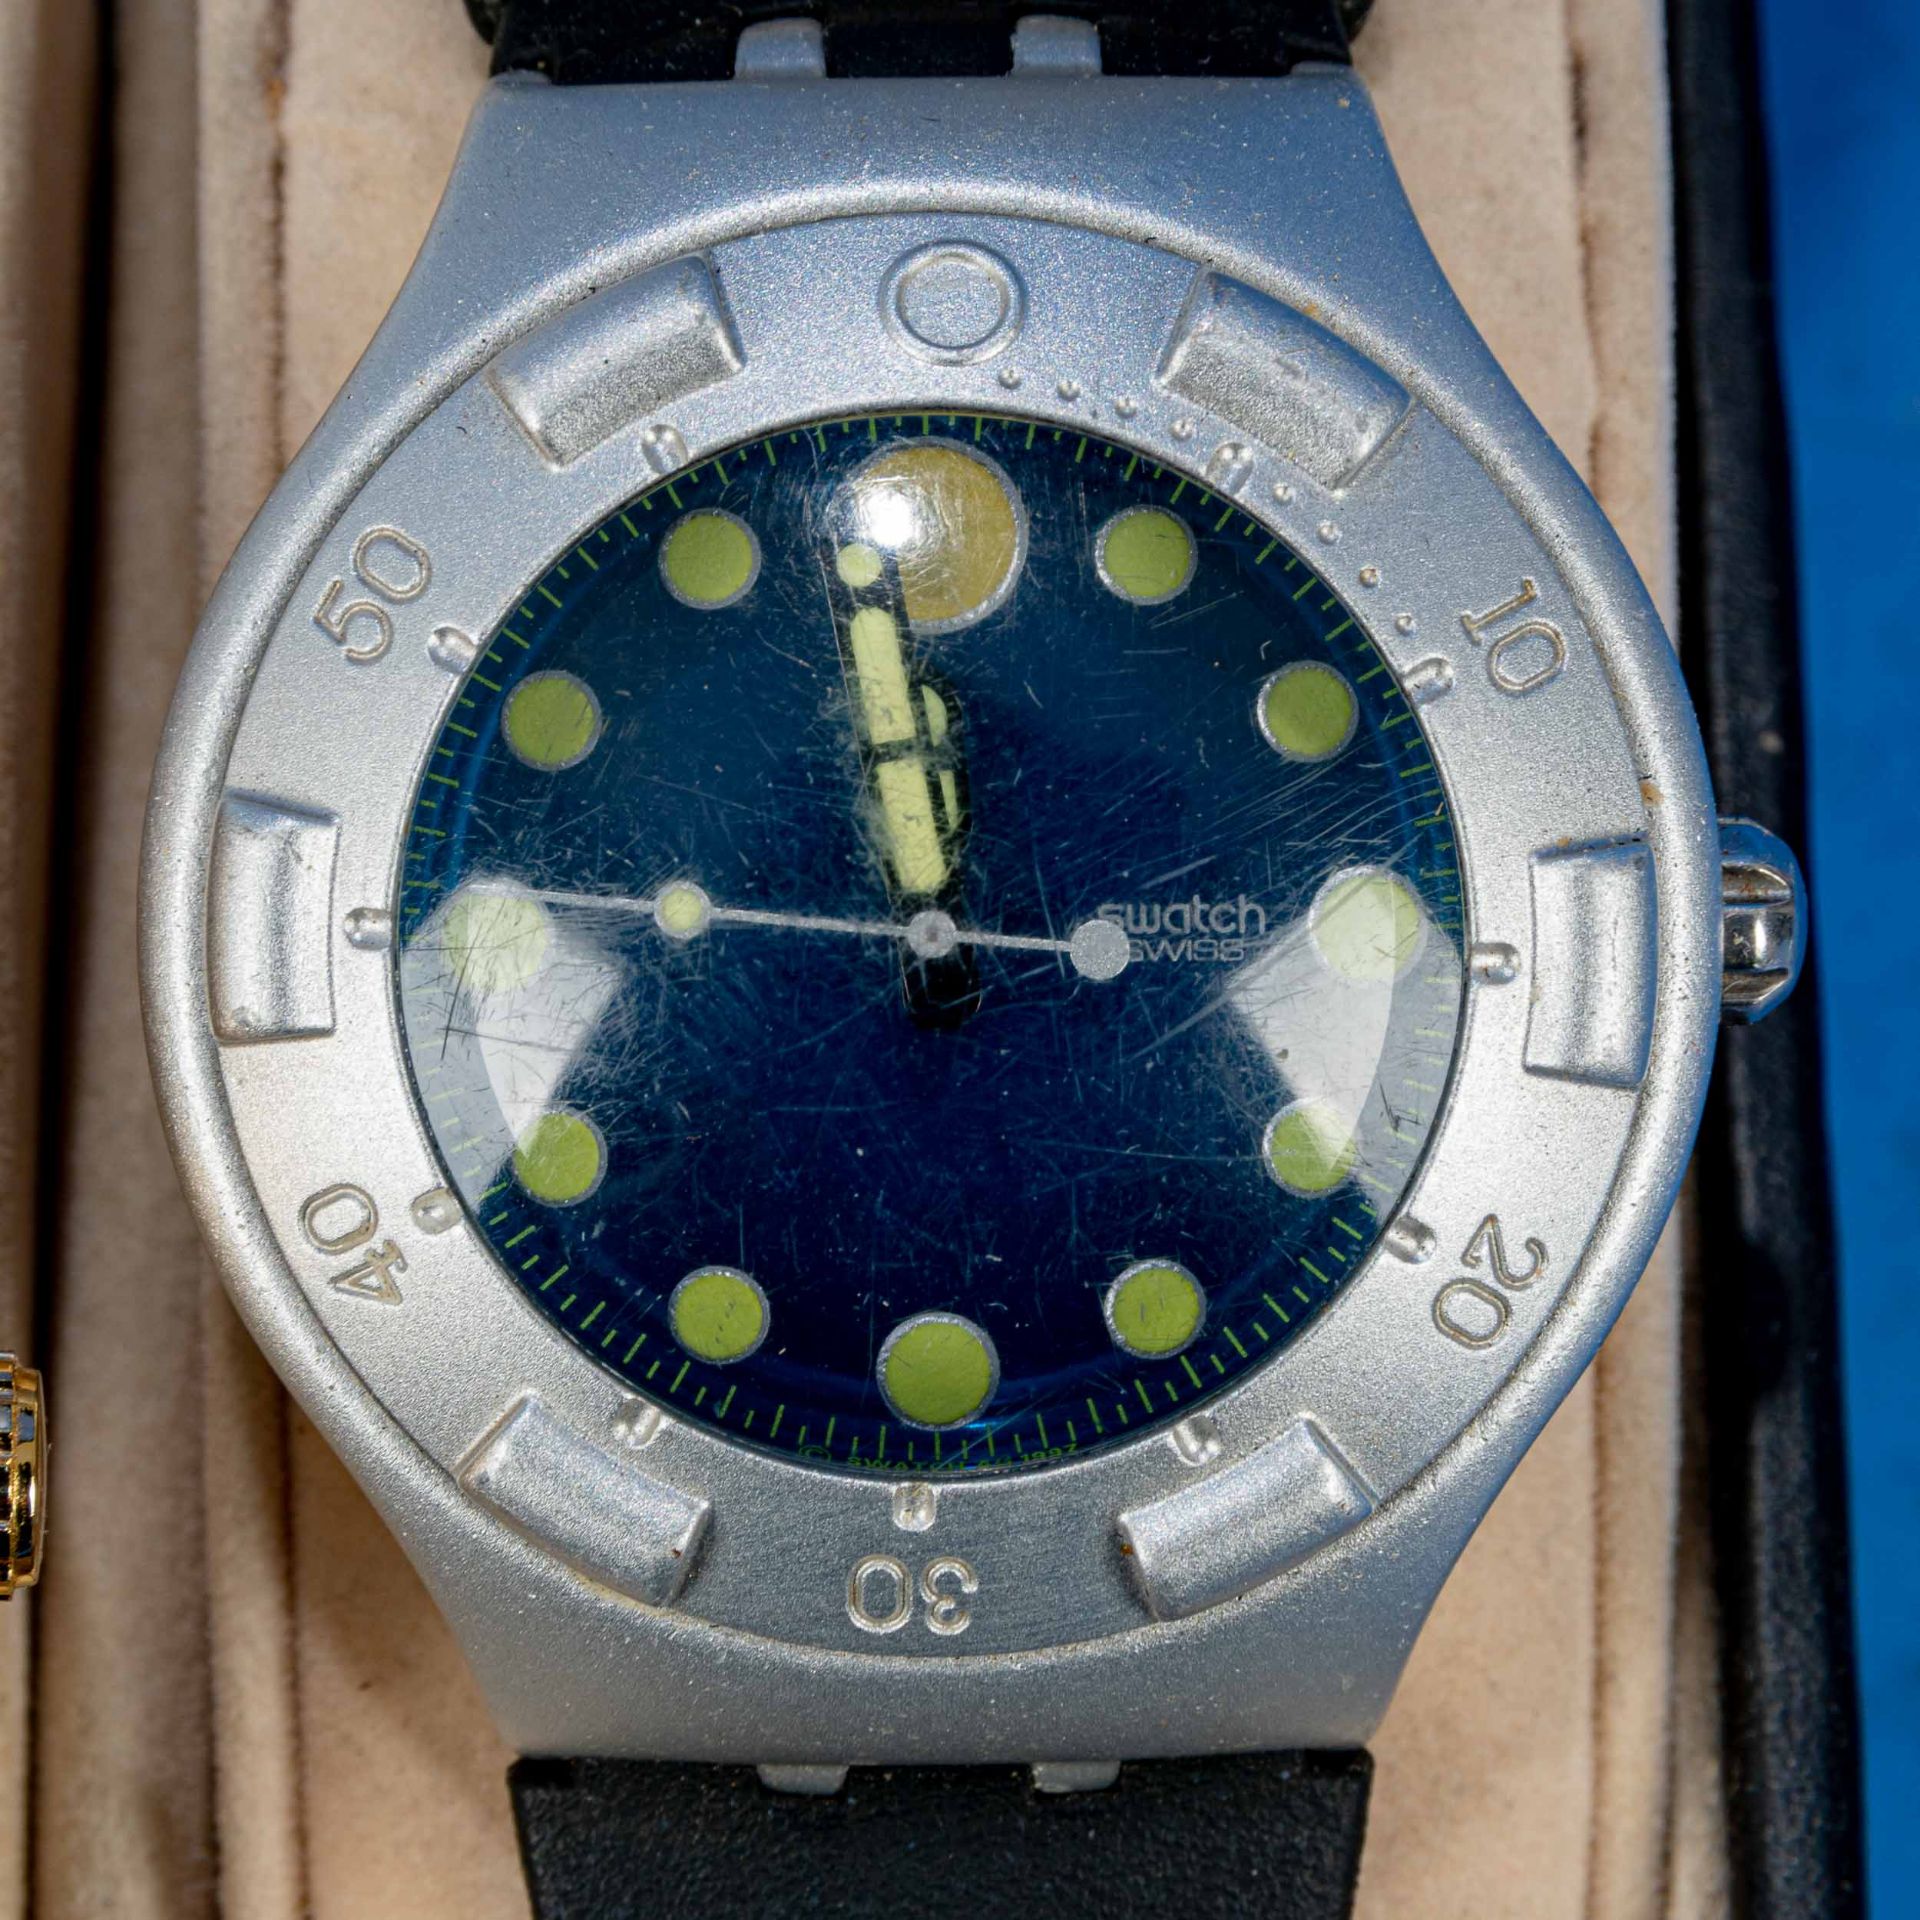 7teilige Uhrensammlung, u. a. der Marke Swatch; versch. Alter, Größen, Materialien, Hersteller, Wer - Image 7 of 8